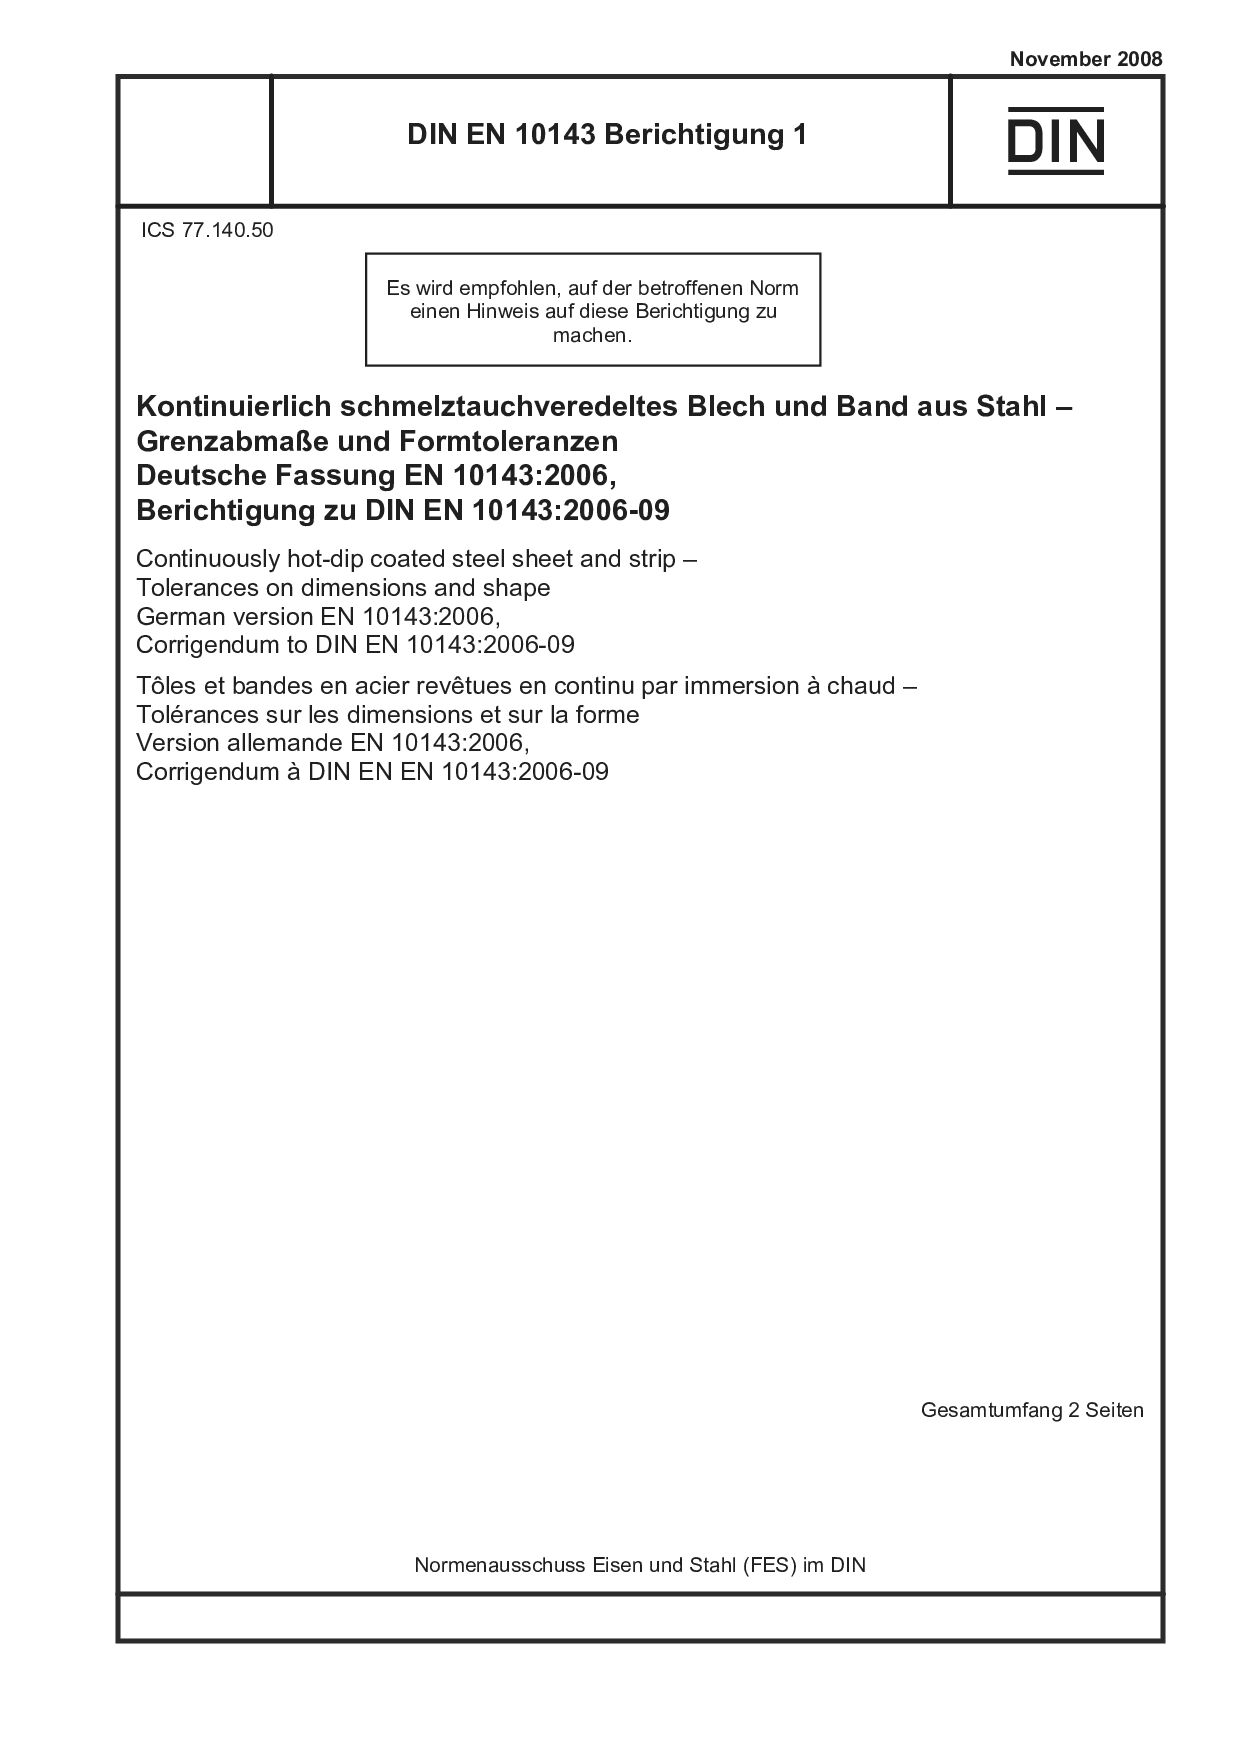 DIN EN 10143 Berichtigung 1:2008-11封面图